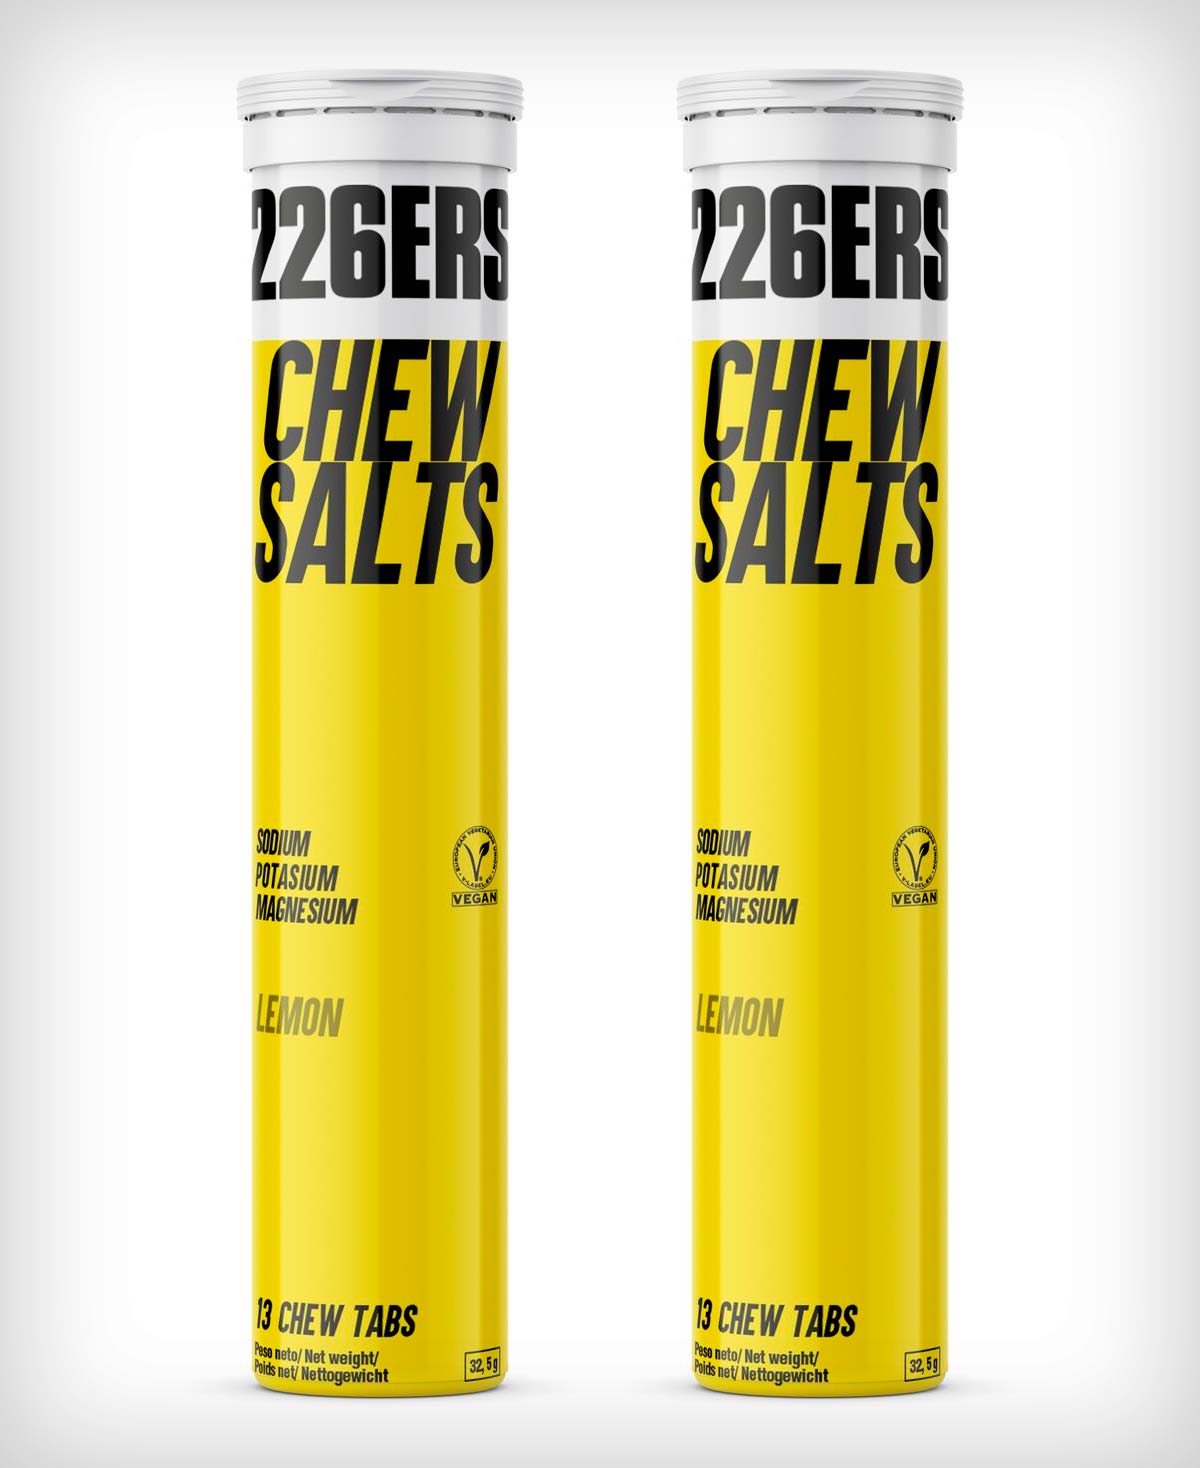 En TodoMountainBike: 226ERS Chew Salts, comprimidos masticables de sales minerales con sabor a limón